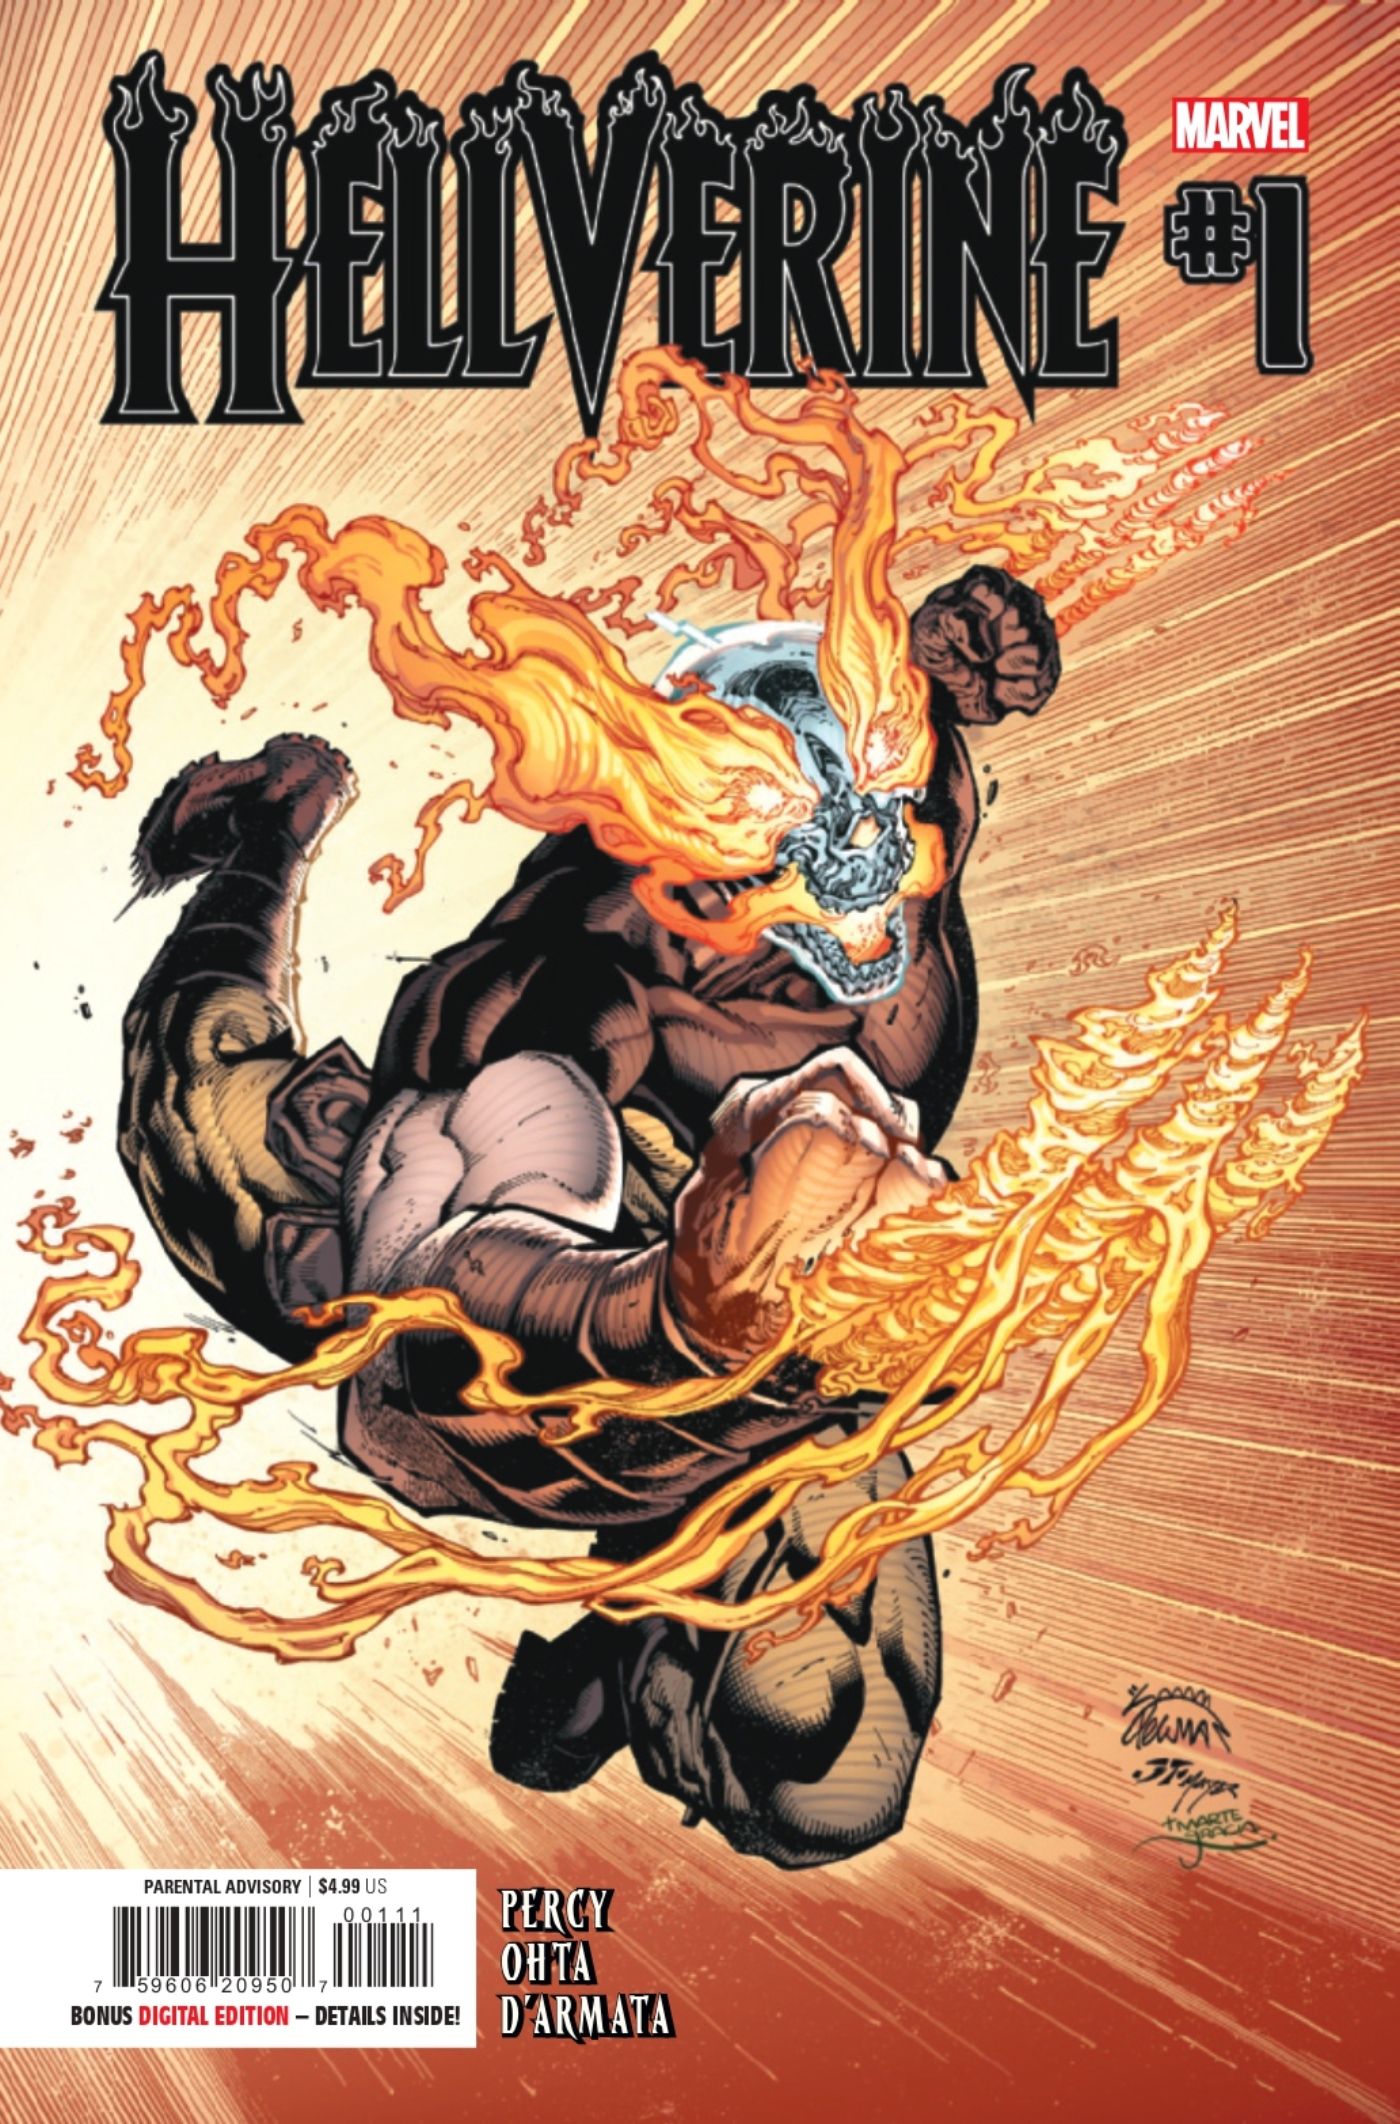 Capa #1 de Hellverine apresentando Wolverine com poderes de Motoqueiro Fantasma.